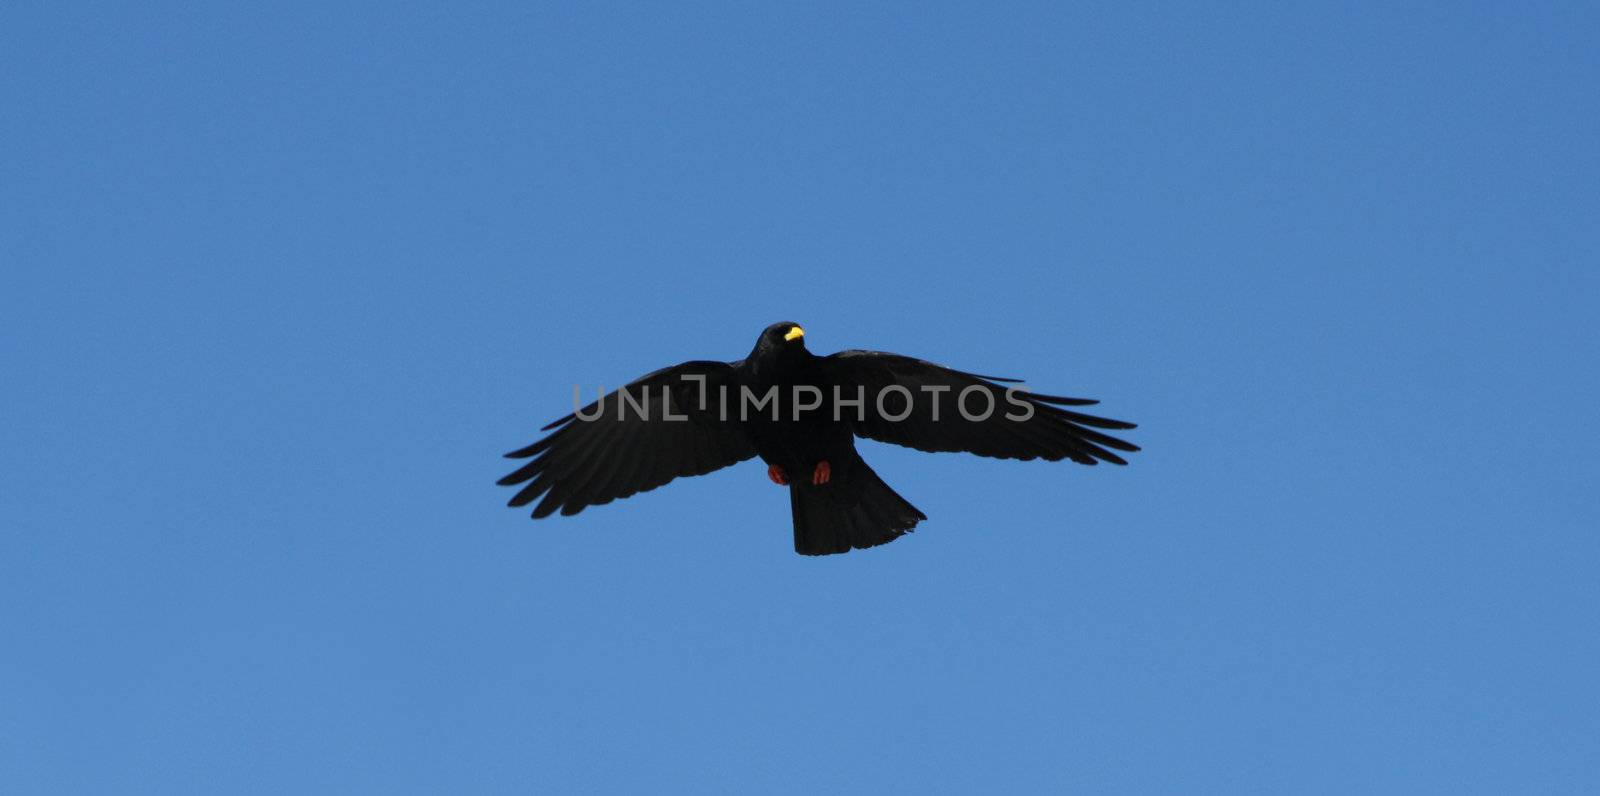 A black crow by photochecker